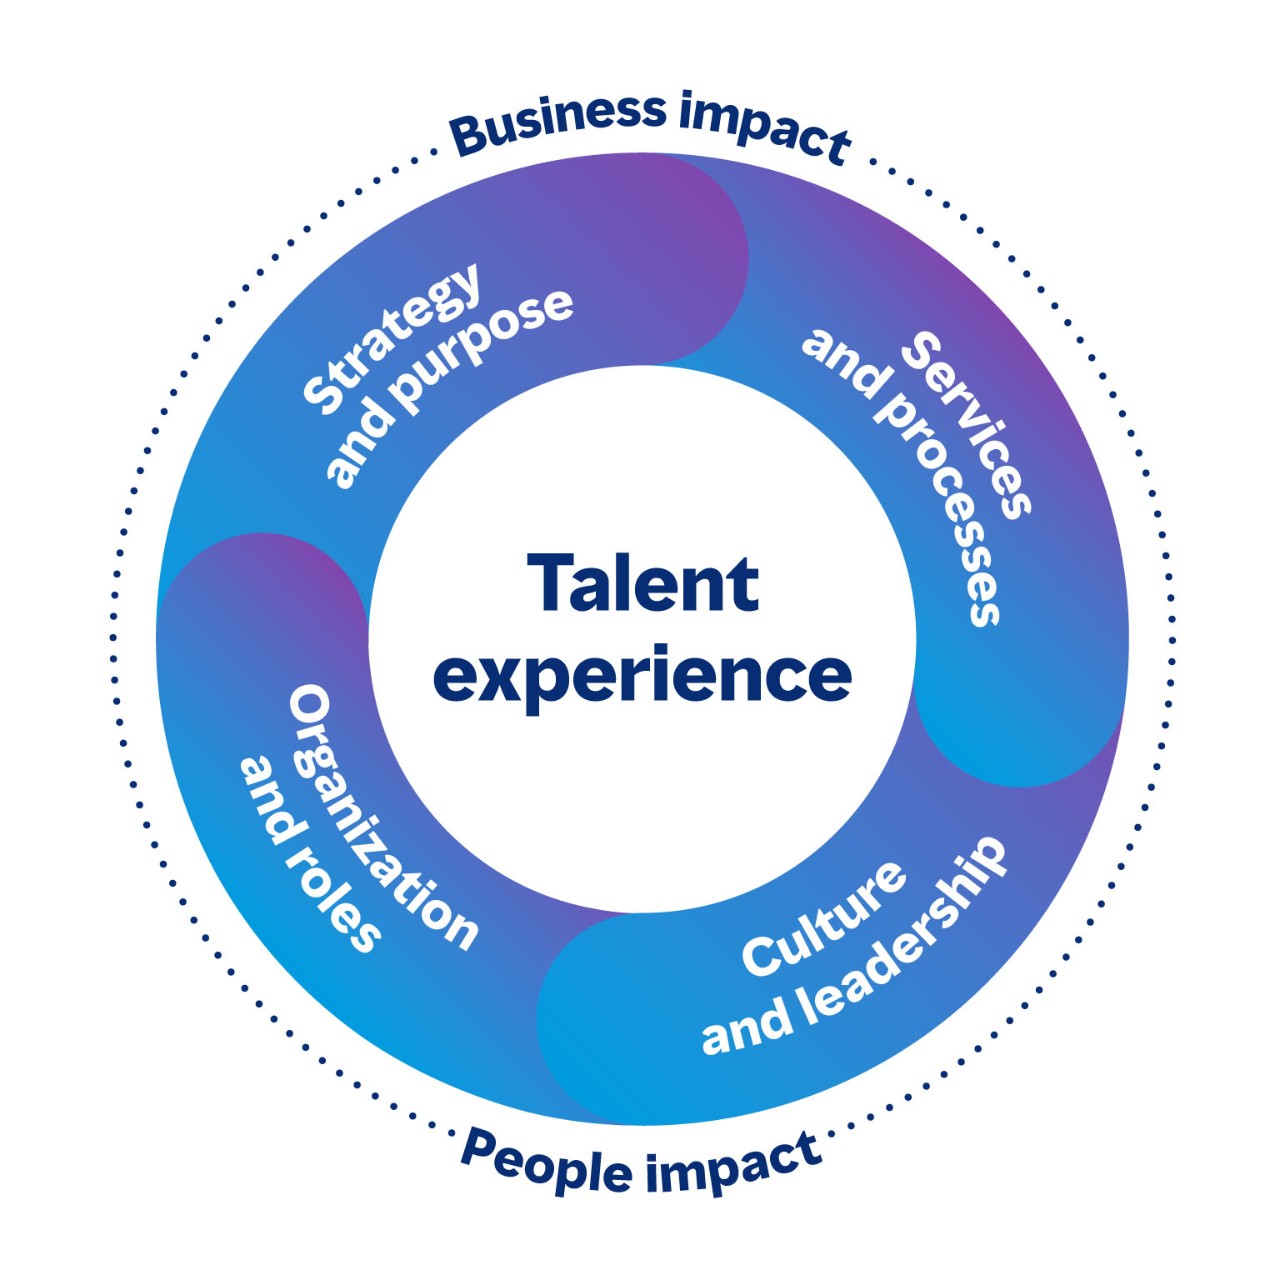 Cirkelvormige afbeelding die de verbonden gebieden van de talentervaring toont die zowel een impact hebben op het bedrijf als op mensen. De vier aspecten zijn strategie en doel, diensten en processen, cultuur en leiderschap, en organisatie en rollen.